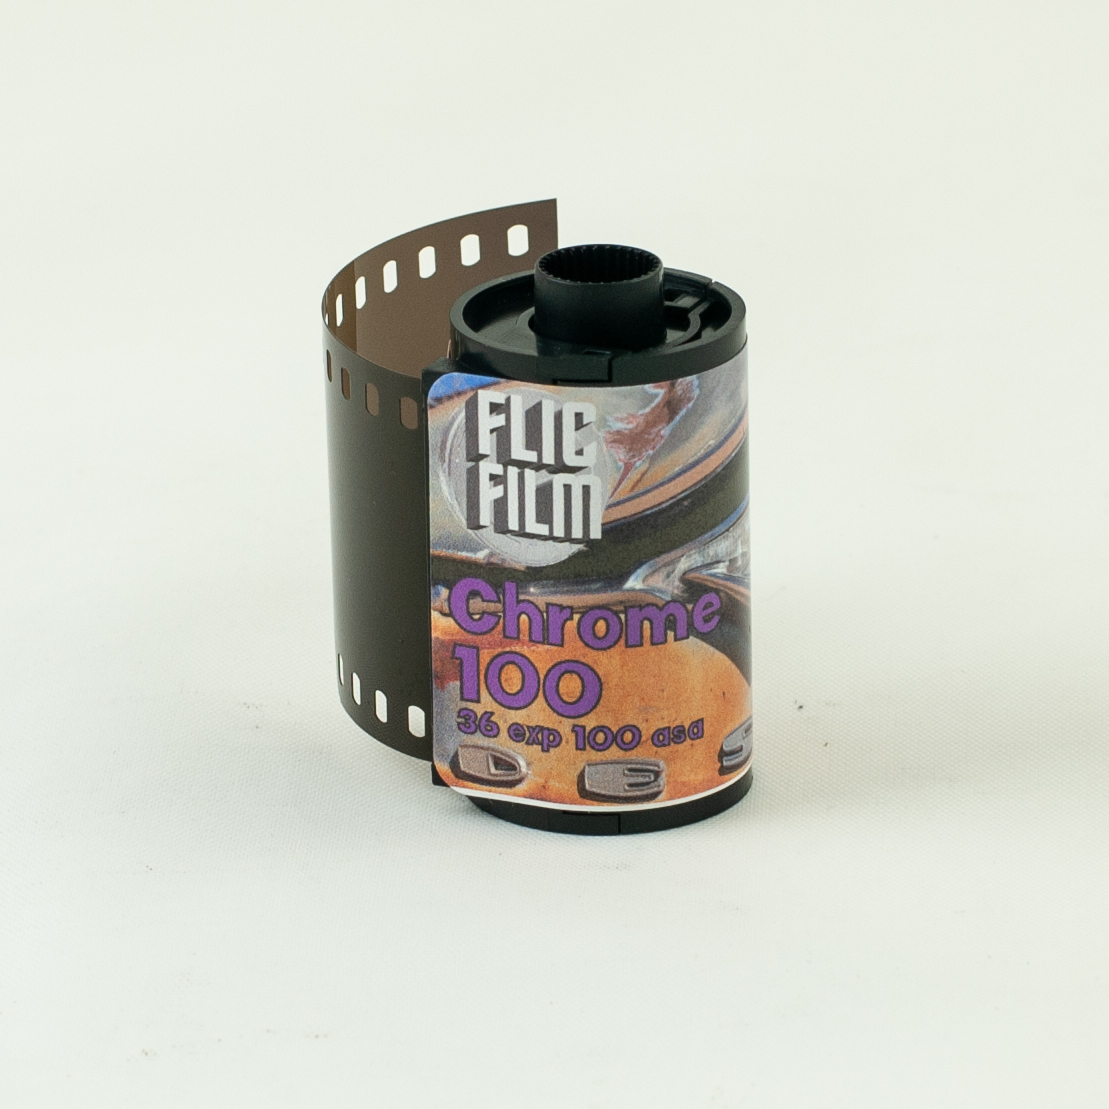 Flic Film VISION3 250D Cine Film